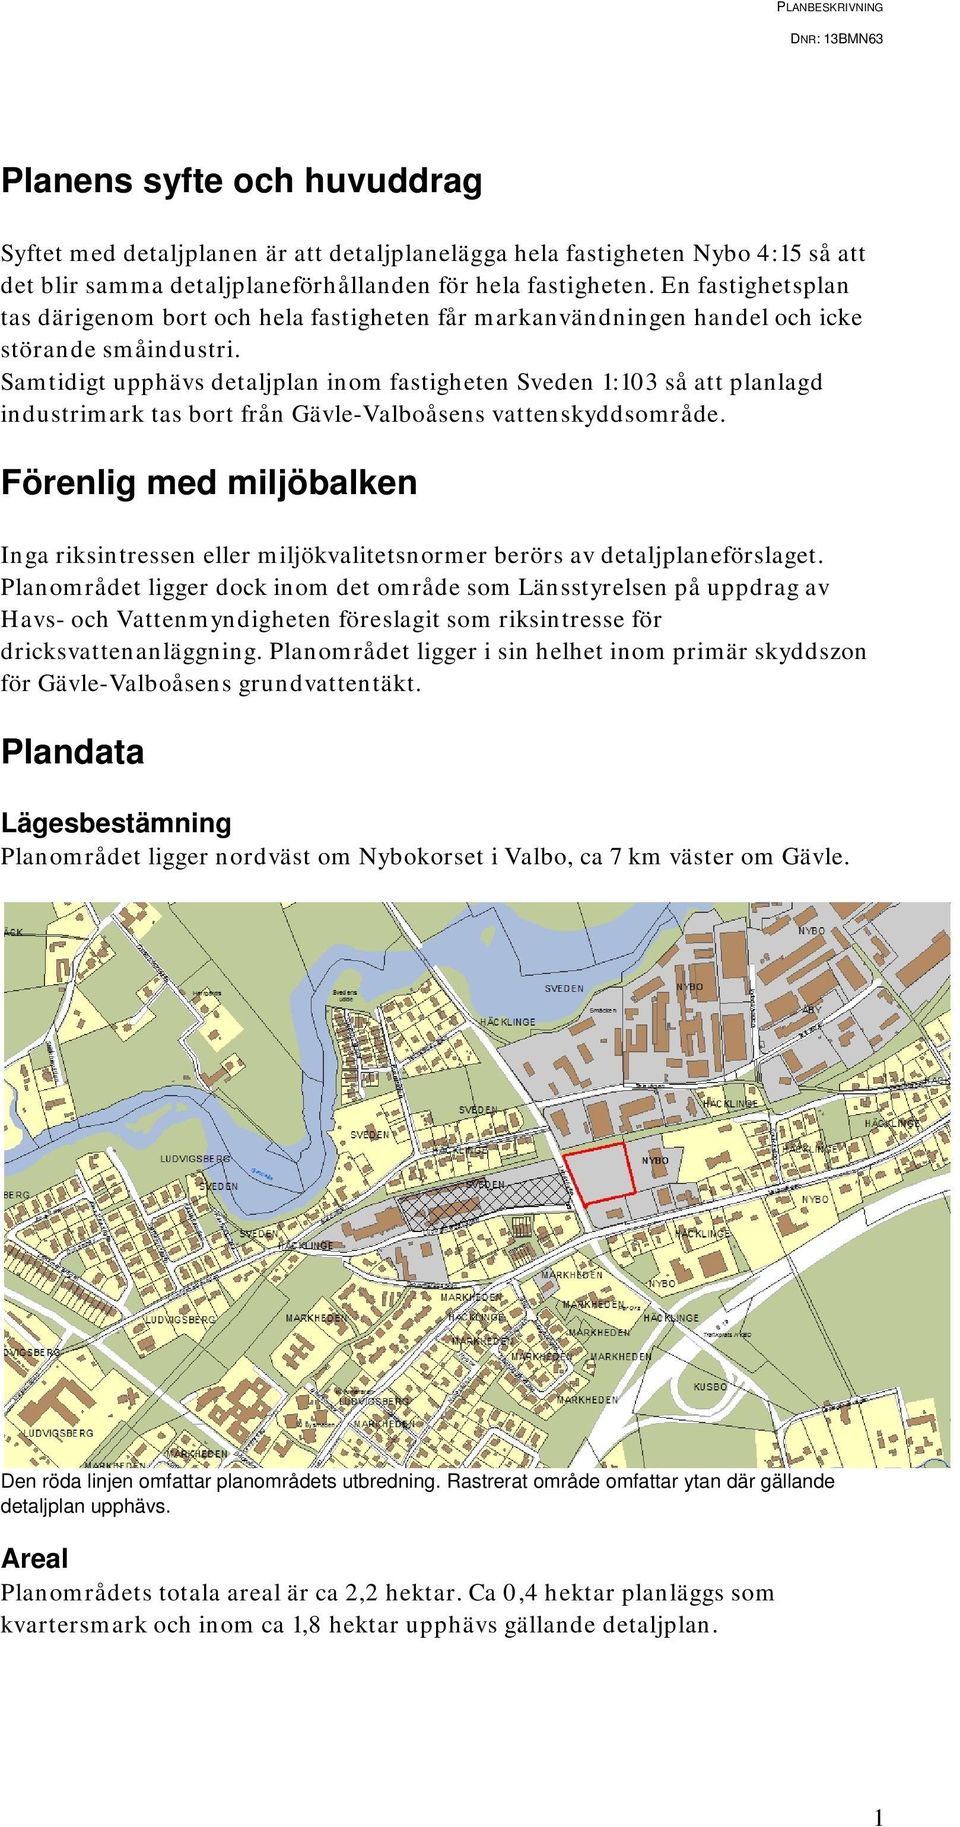 Samtidigt upphävs detaljplan inom fastigheten Sveden 1:103 så att planlagd industrimark tas bort från Gävle-Valboåsens vattenskyddsområde.